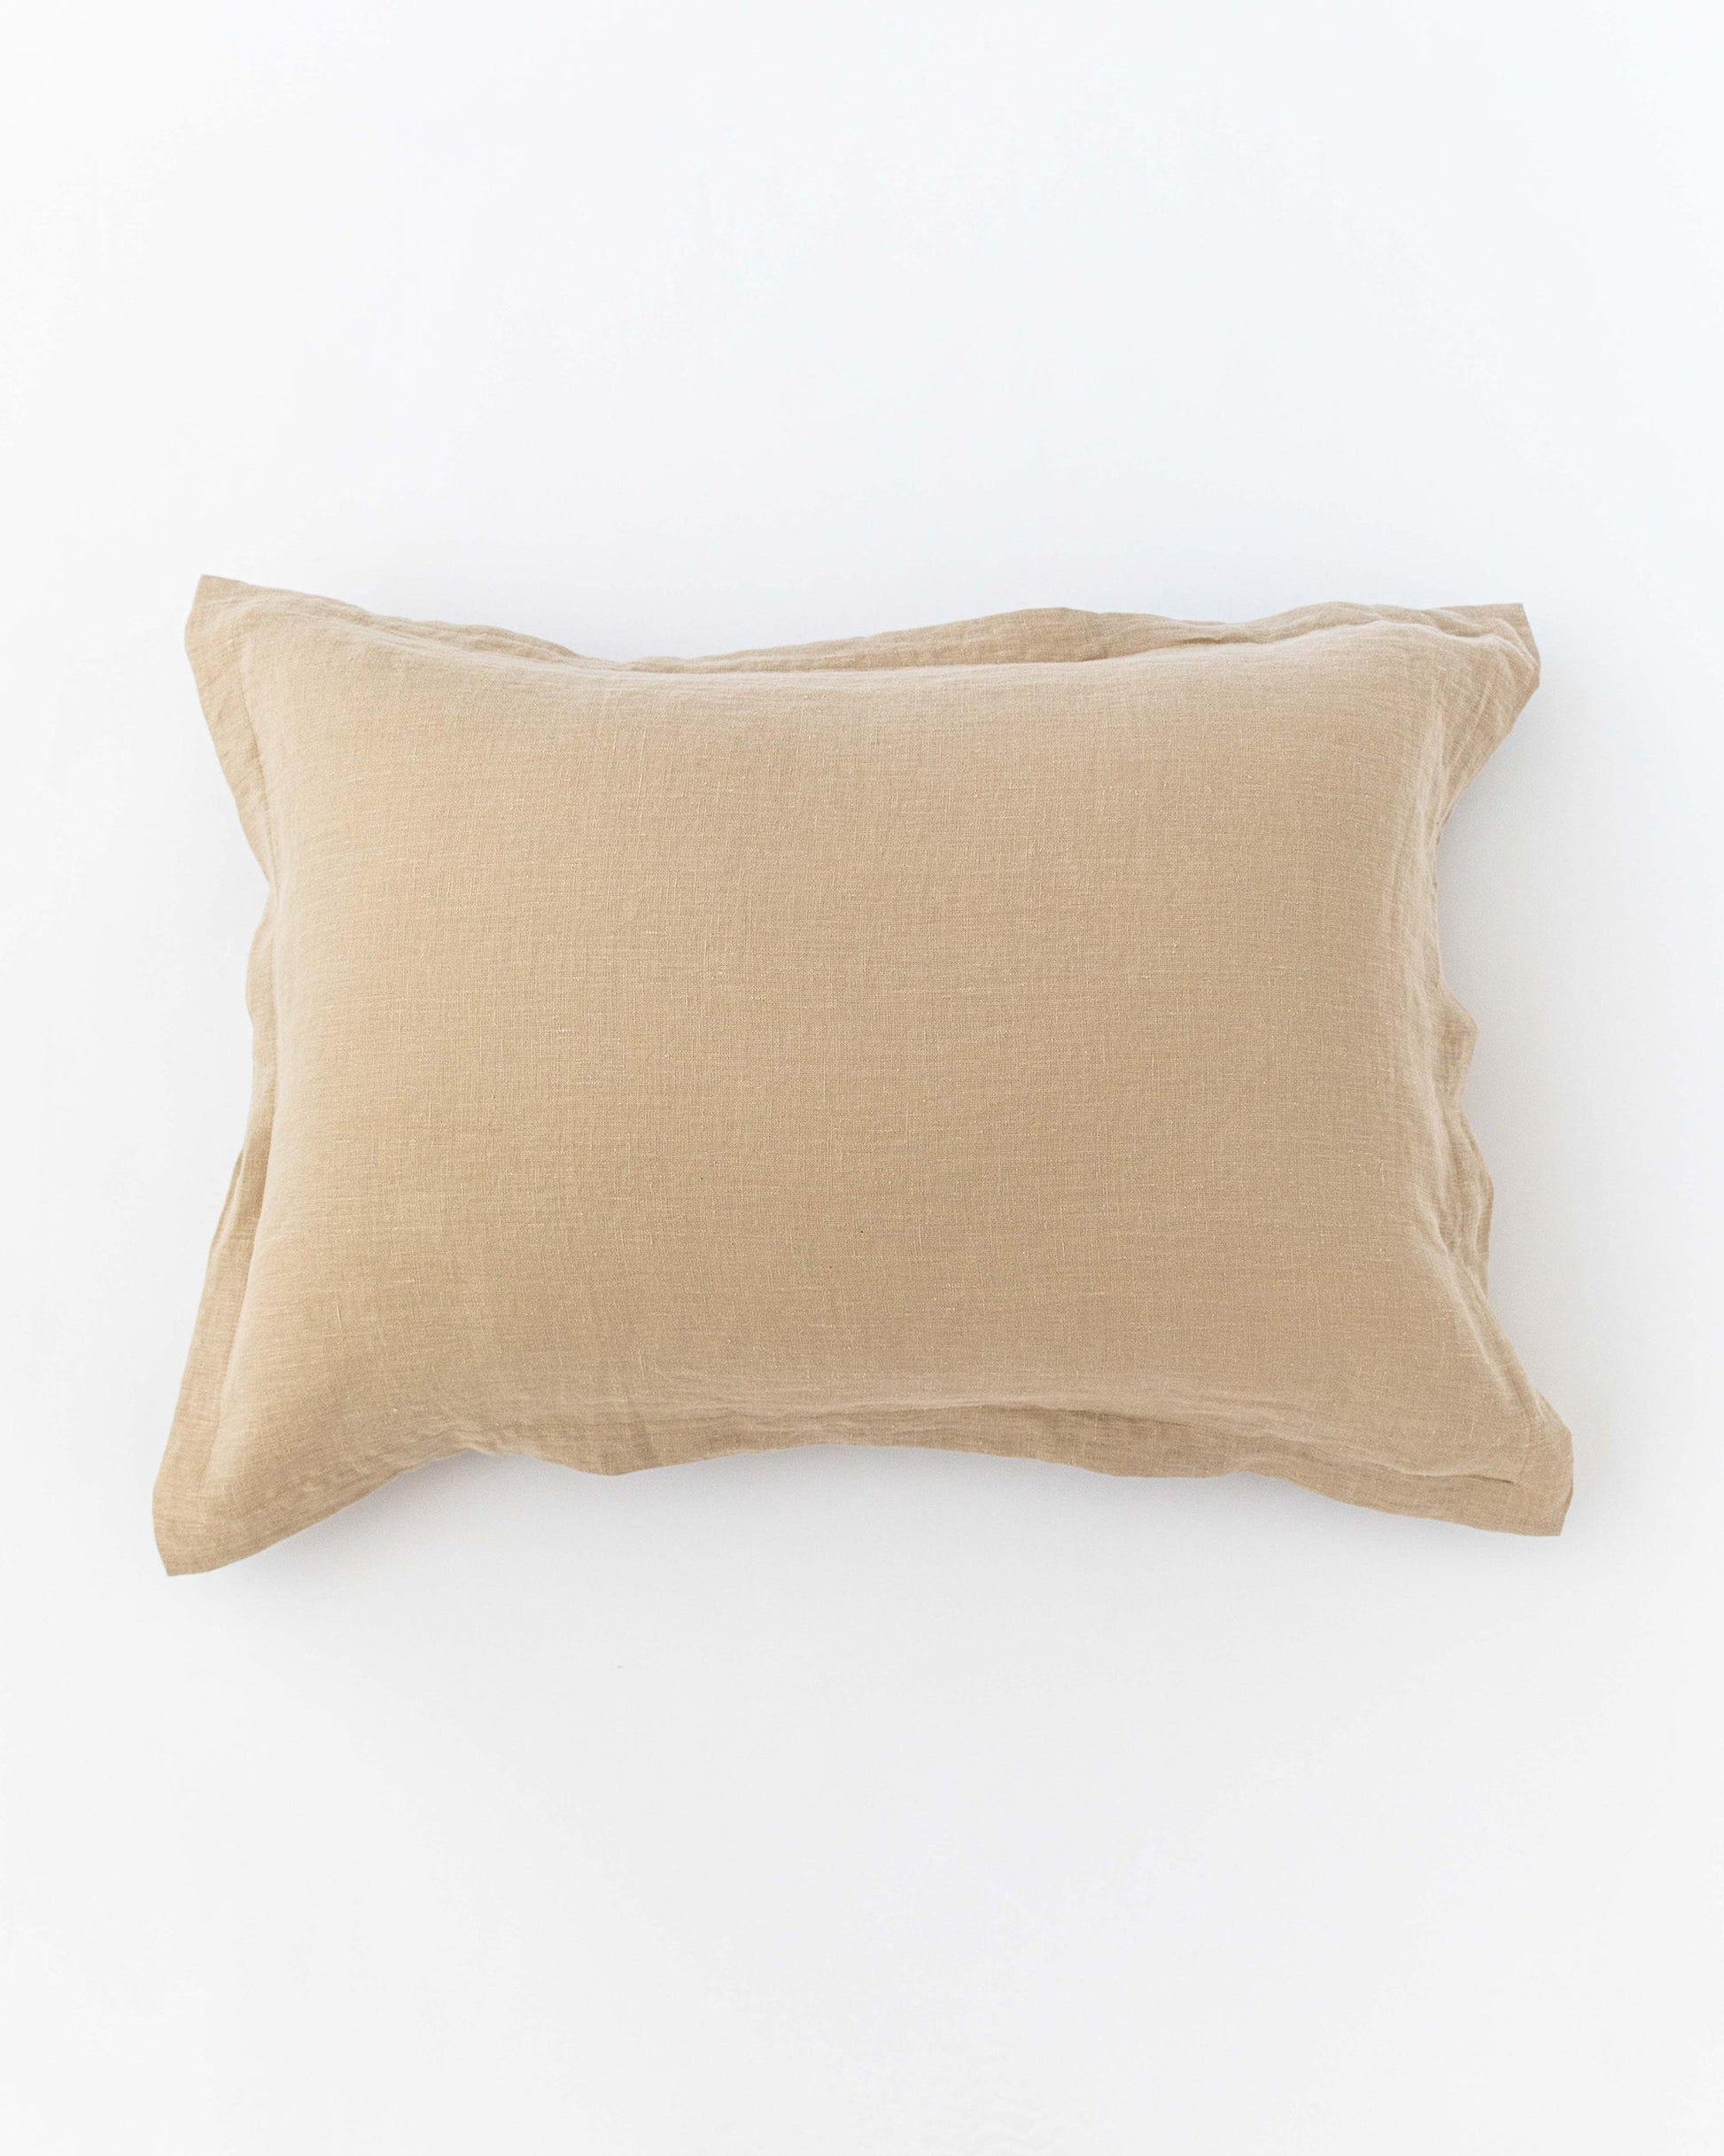 Linen pillow sham in Natural linen - MagicLinen